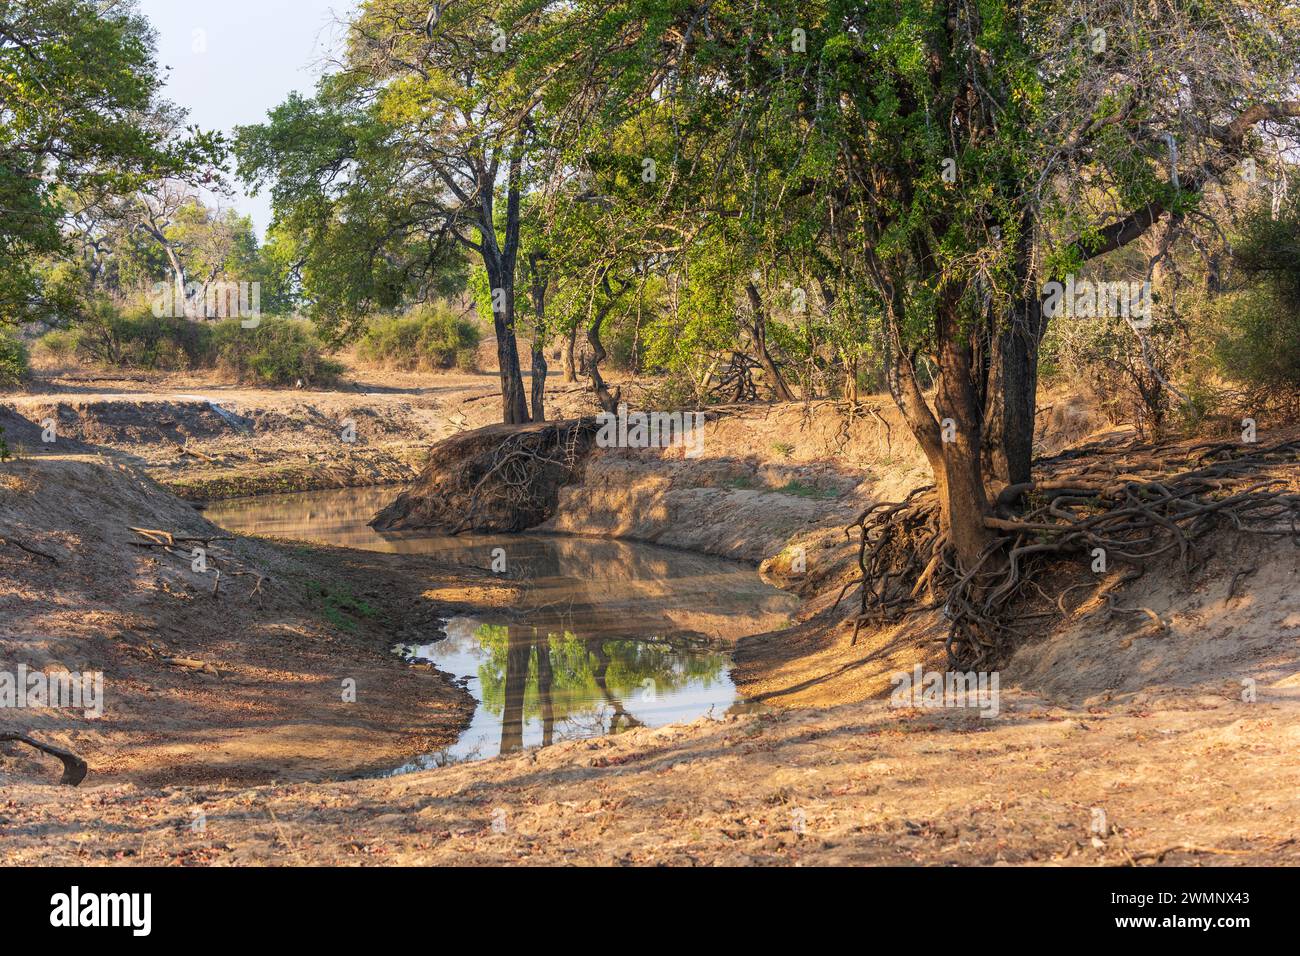 Paysage typique de savane boisée dans la vallée de la rivière Luangwa dans le parc national de South Luangwa, secteur de Nsefu, en Zambie, Afrique australe Banque D'Images